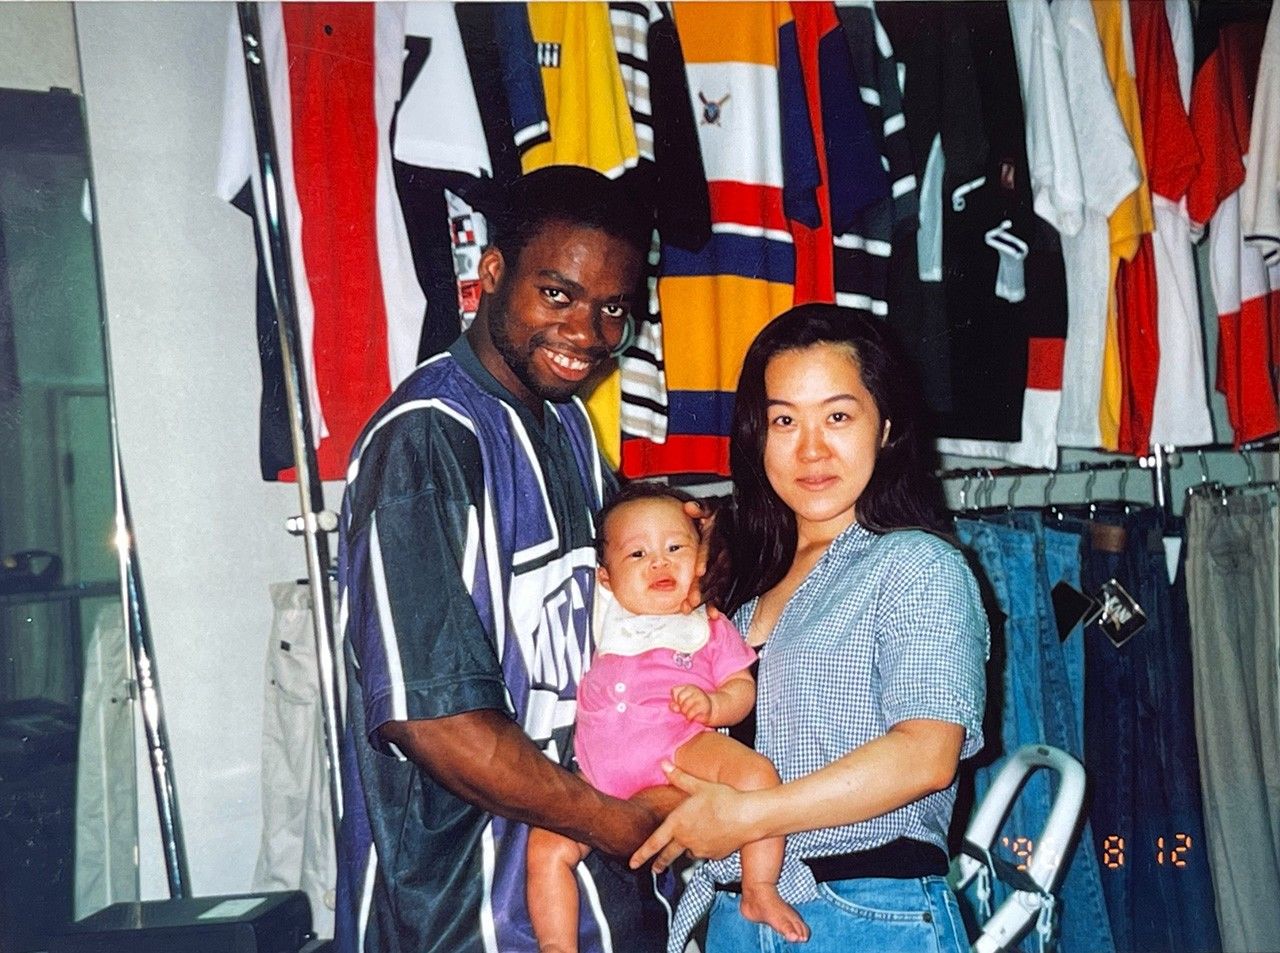  أوساكا تاماكي (على اليمين) مع الزوج ليونار فرانسوا وابنتهما ماري البالغة من العمر أربعة أشهر في متجرهم الصغير لاستيراد الملابس في أوساكا. (الصورة مقدمة من أوساكا تاماكي).